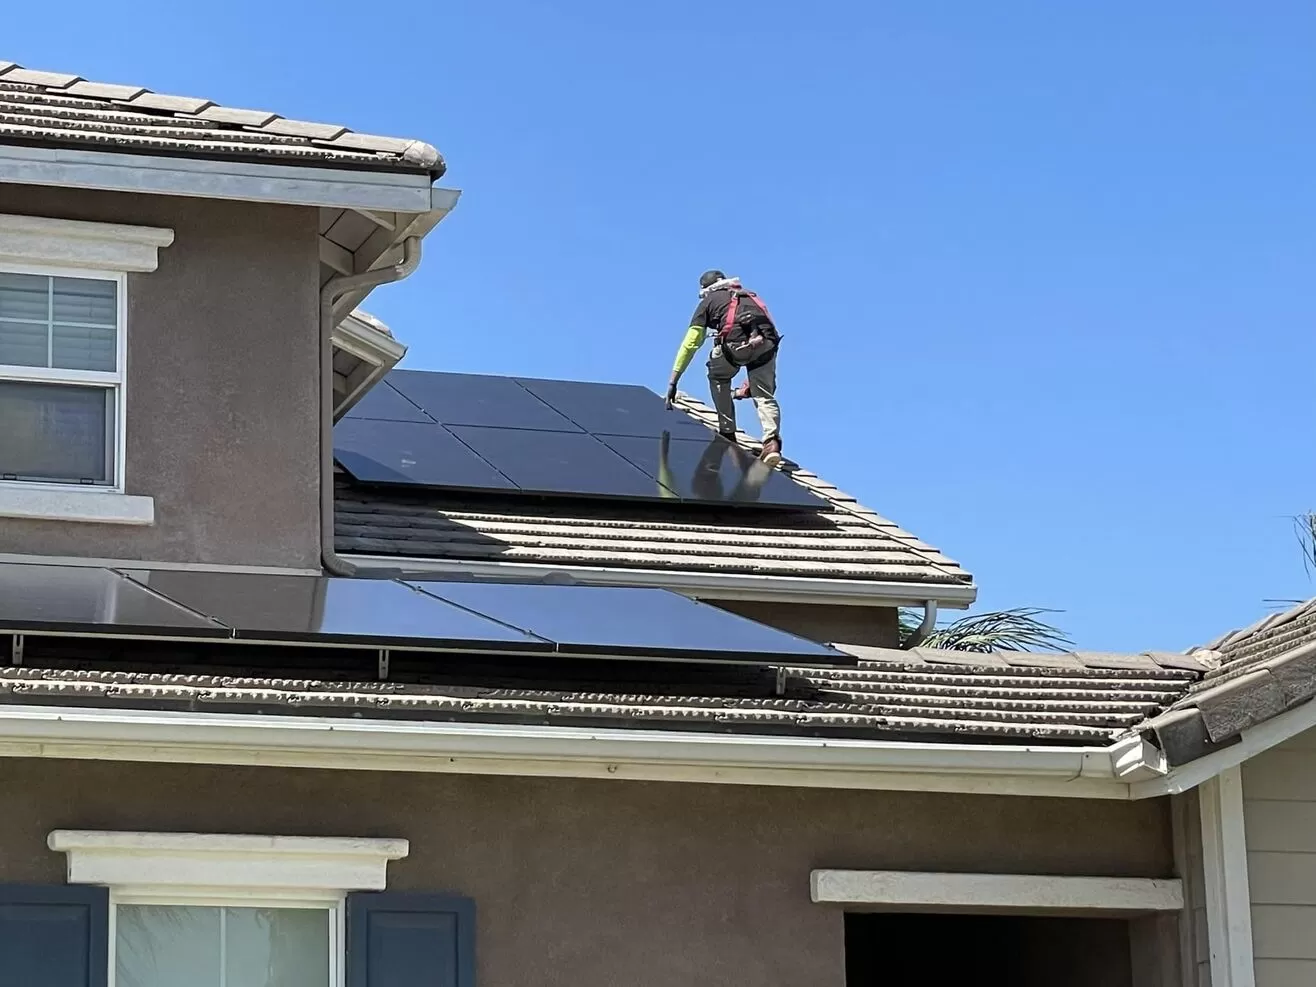 sistema electrico solar para casas - Paneles Solares Bayshore